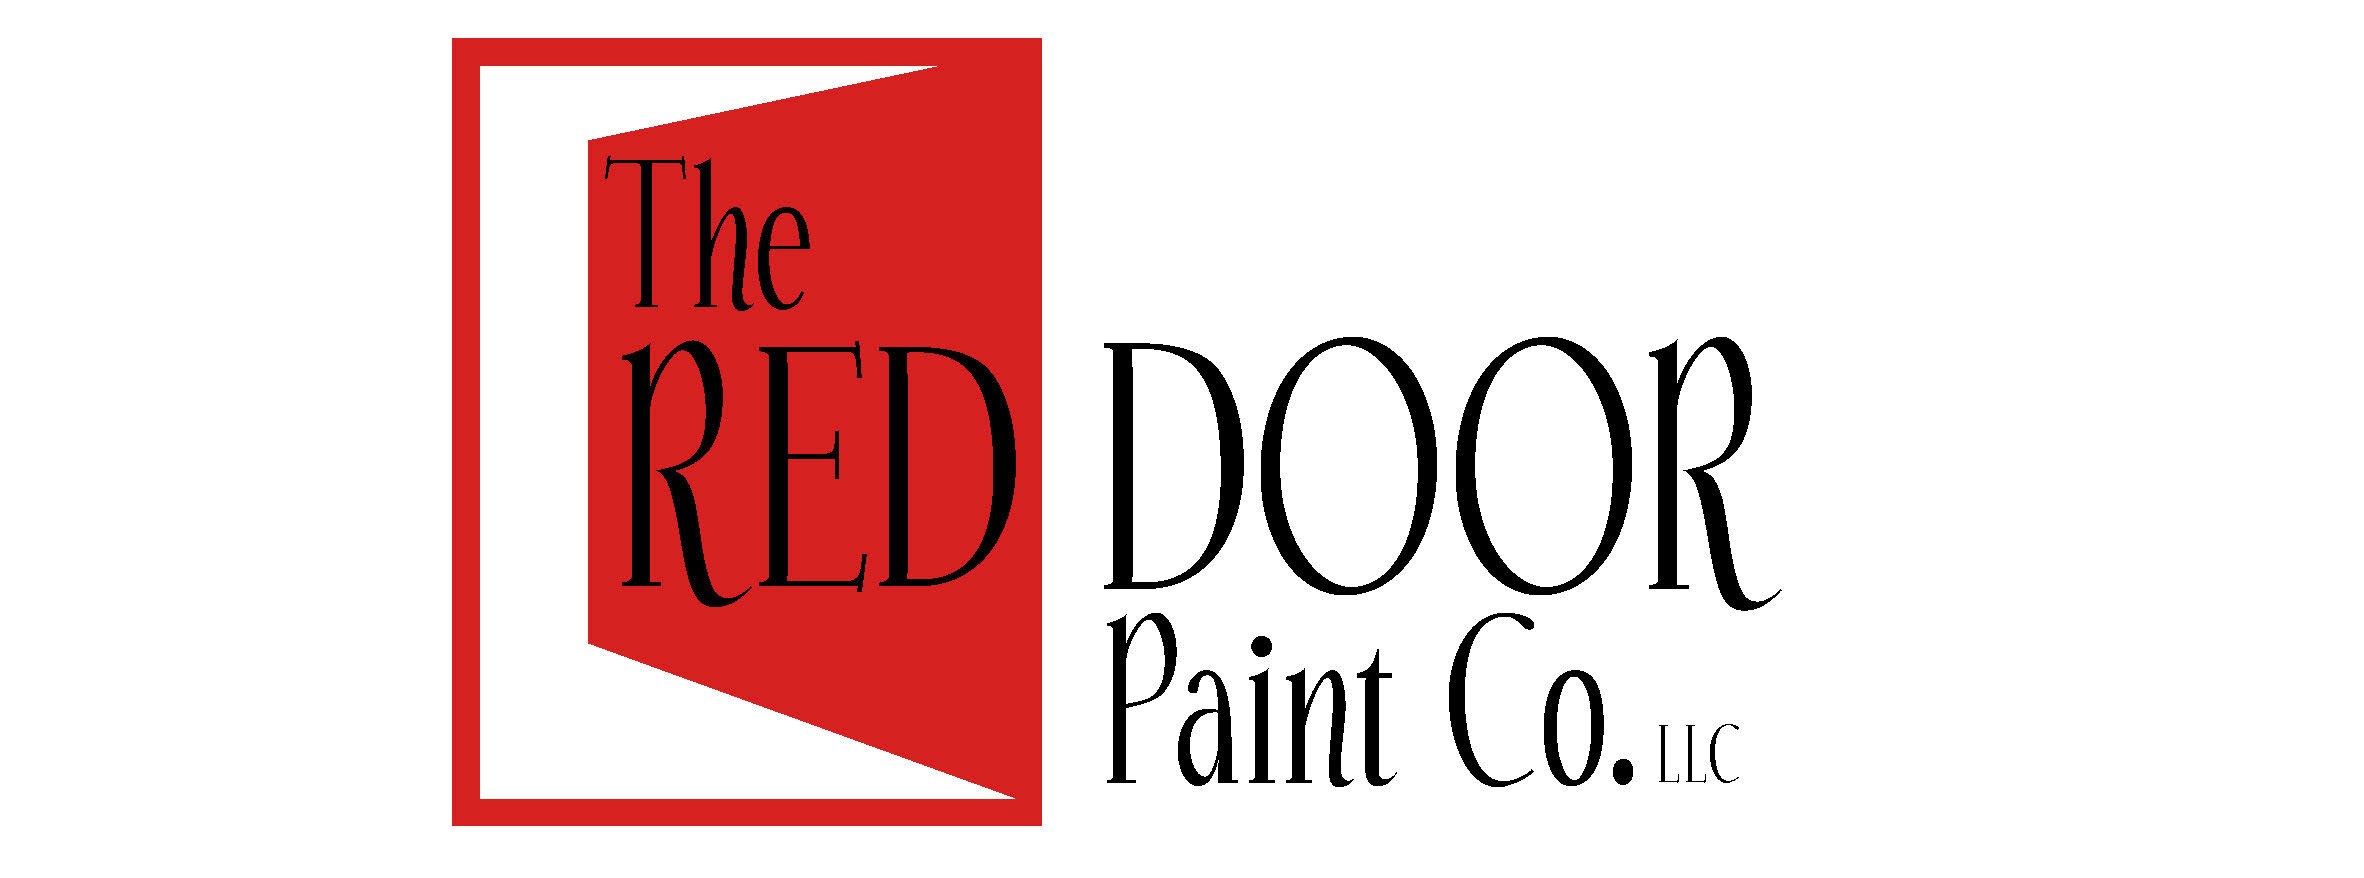 The Red Door Paint Co. LLC